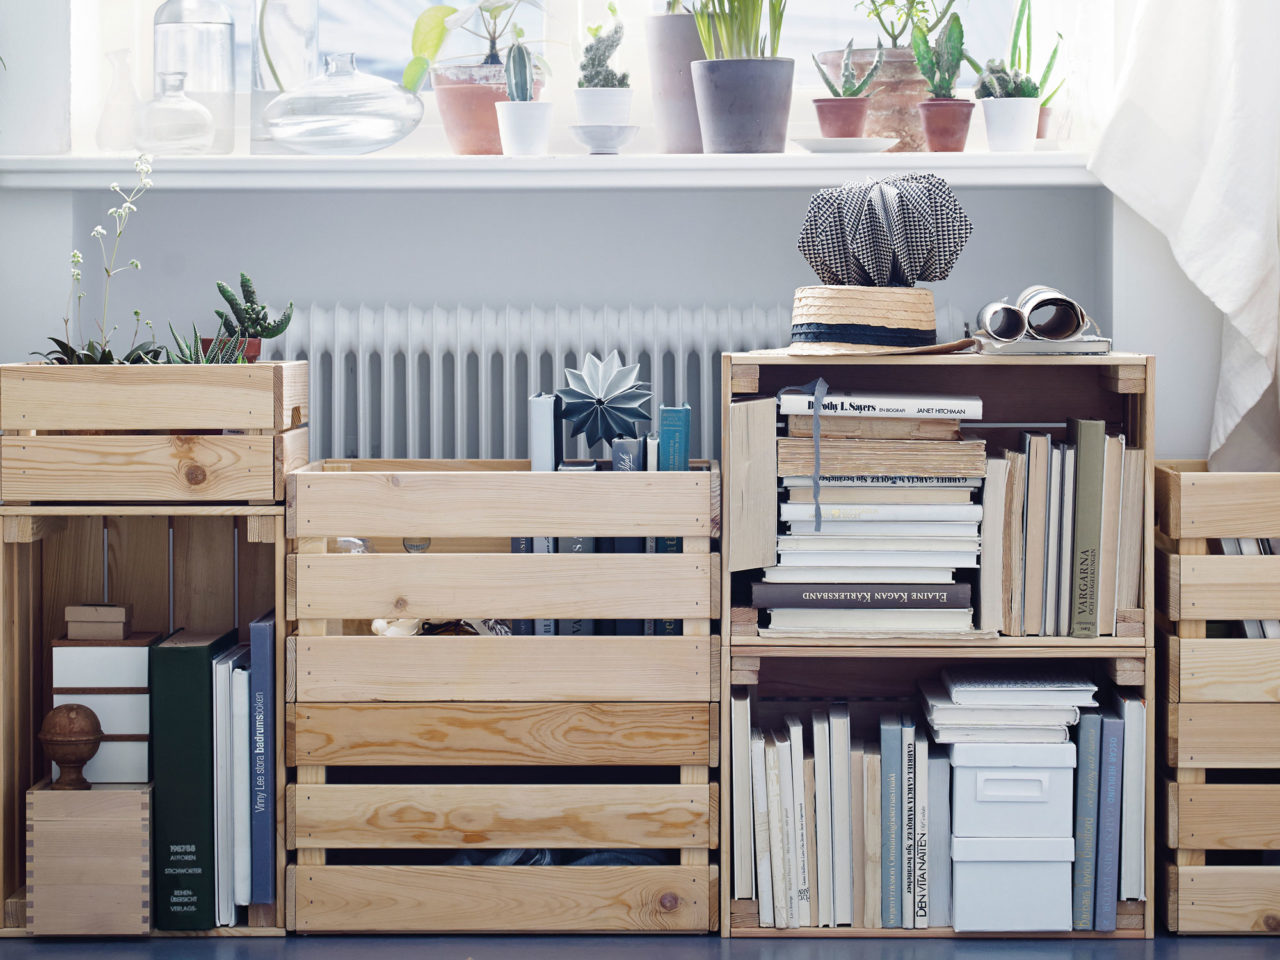 Böcker och småförvaring fyller en möbel helt bestående av trälådor, modell KNAGGLIG, staplade på olika ledder.